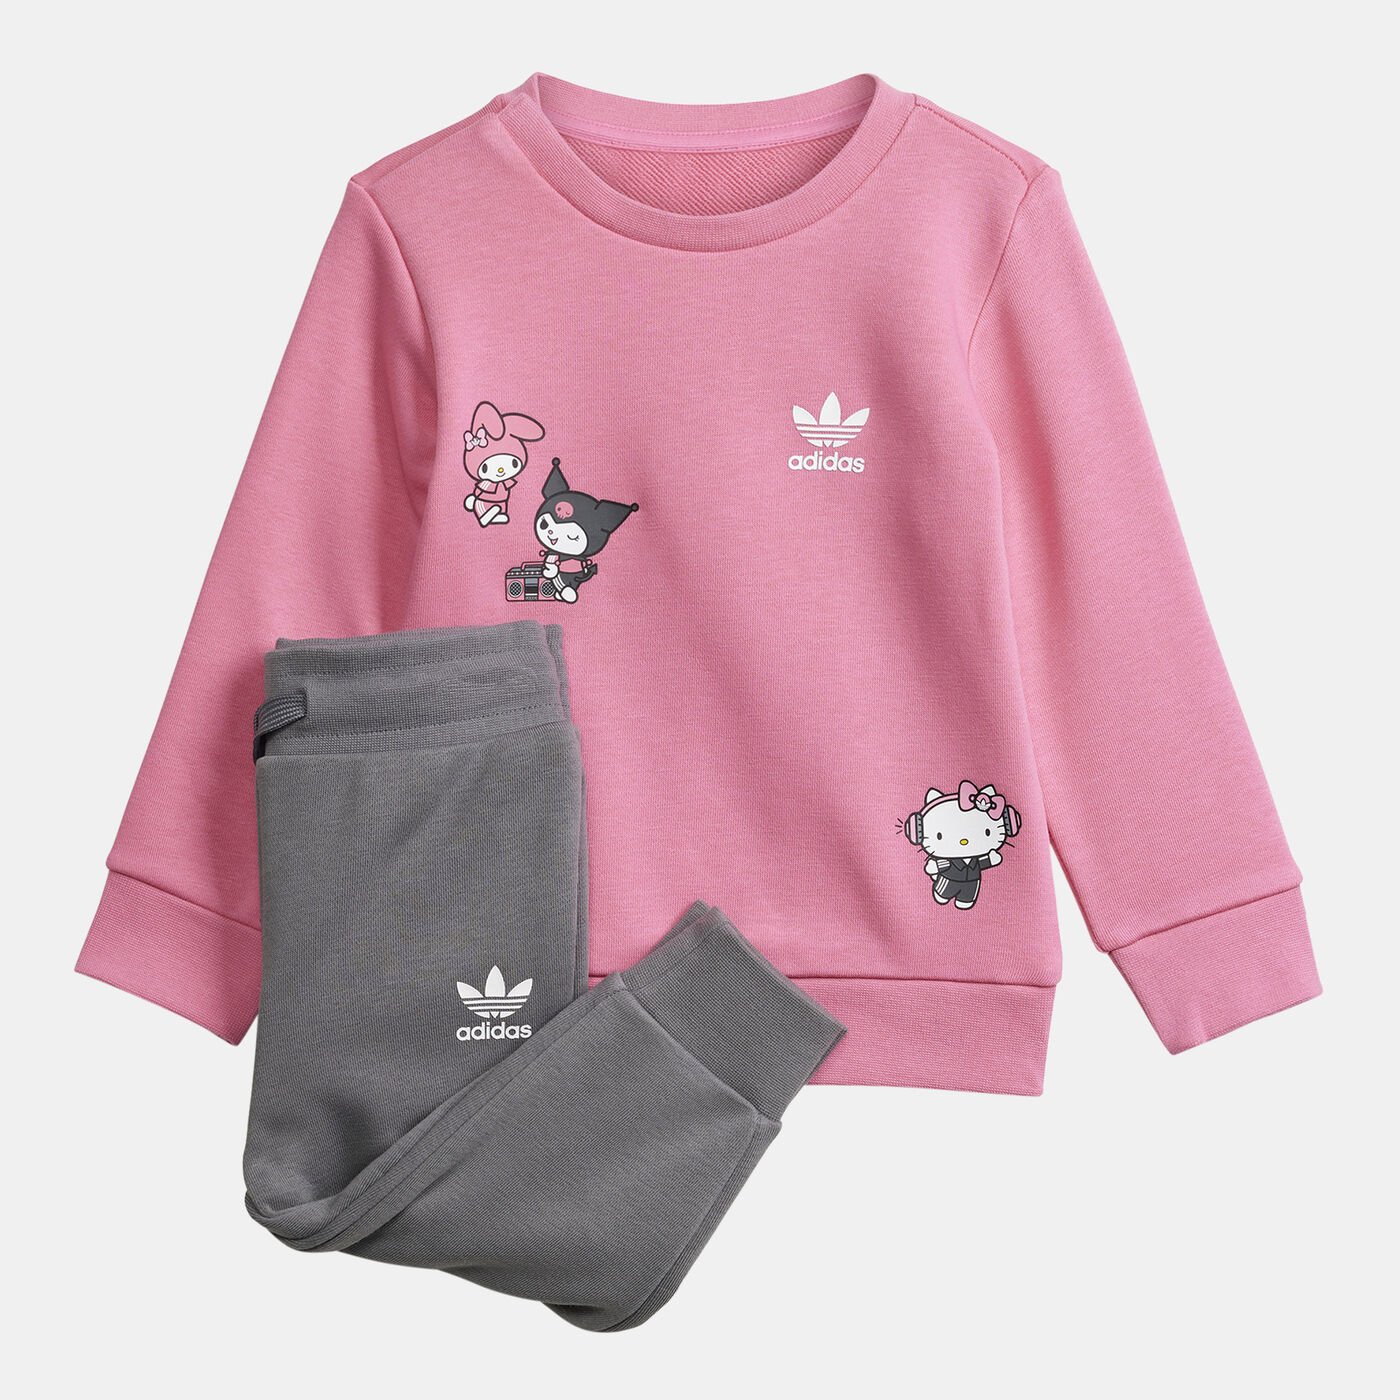 Kids' x Hello Kitty Sweatshirt and Sweatpants Set